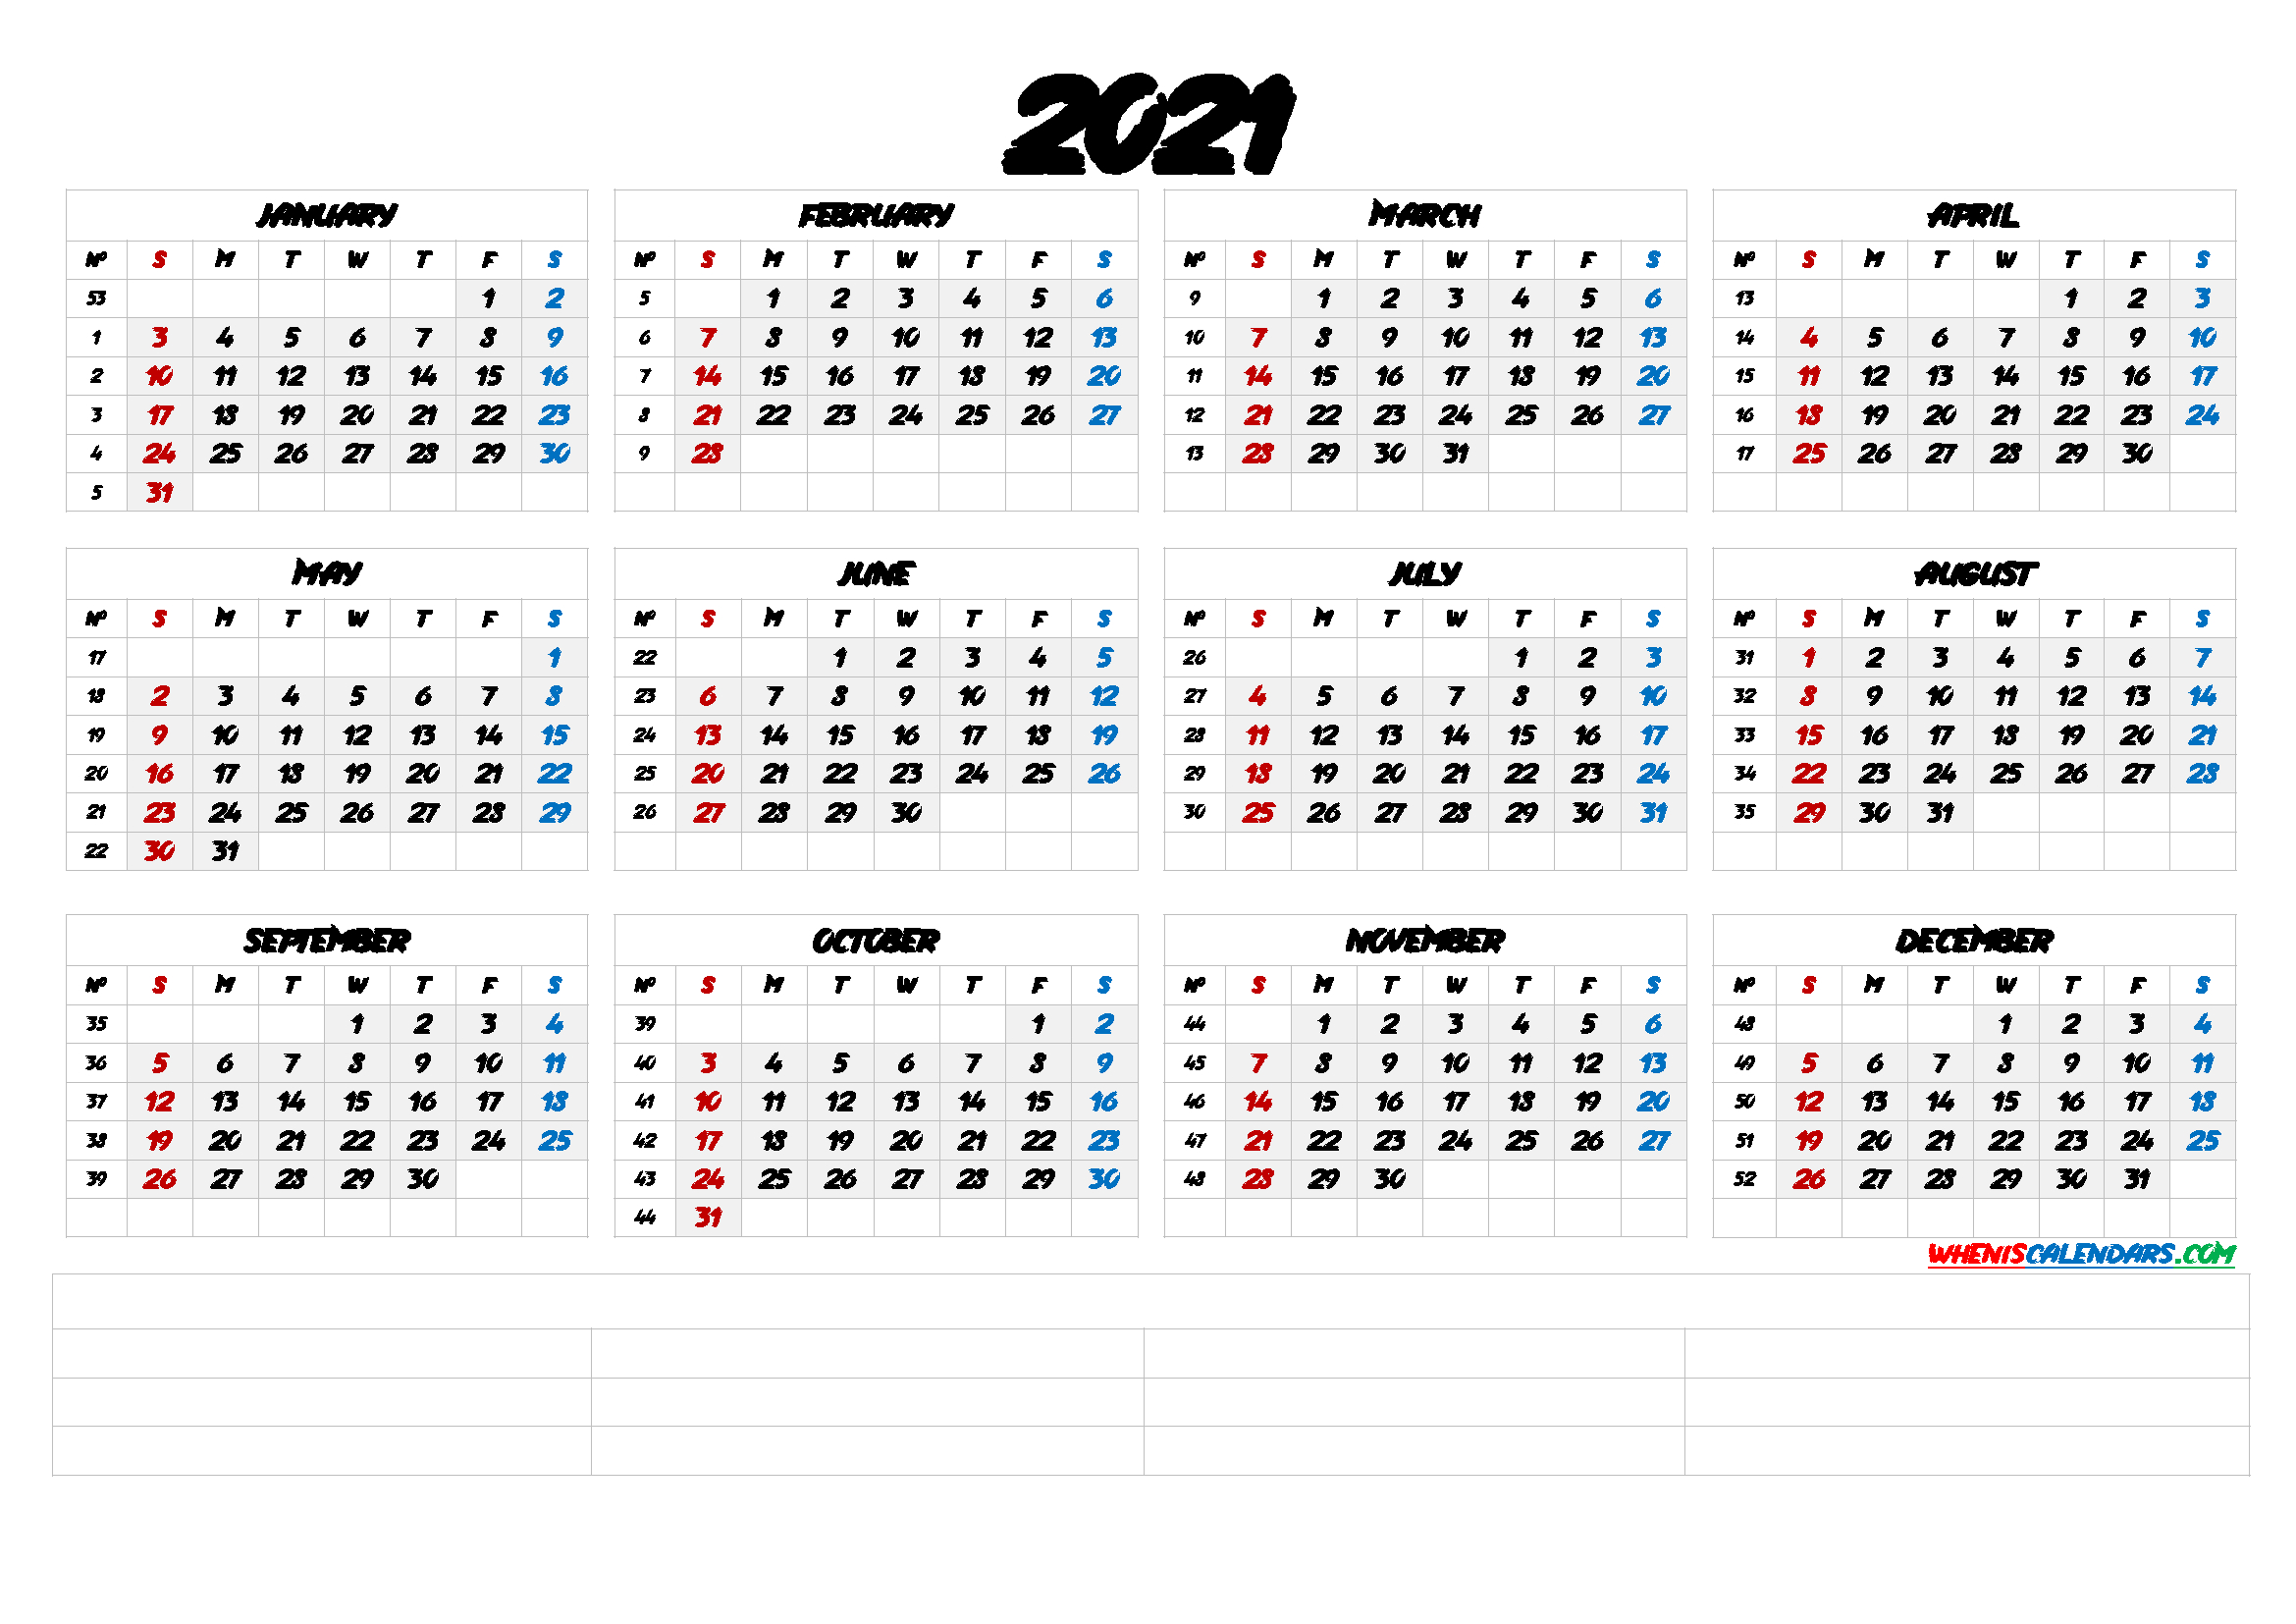 20+ Calendar 2021 By Week Number - Free Download Printable-Print Free 2021 Monthly Calendar Without Downloading